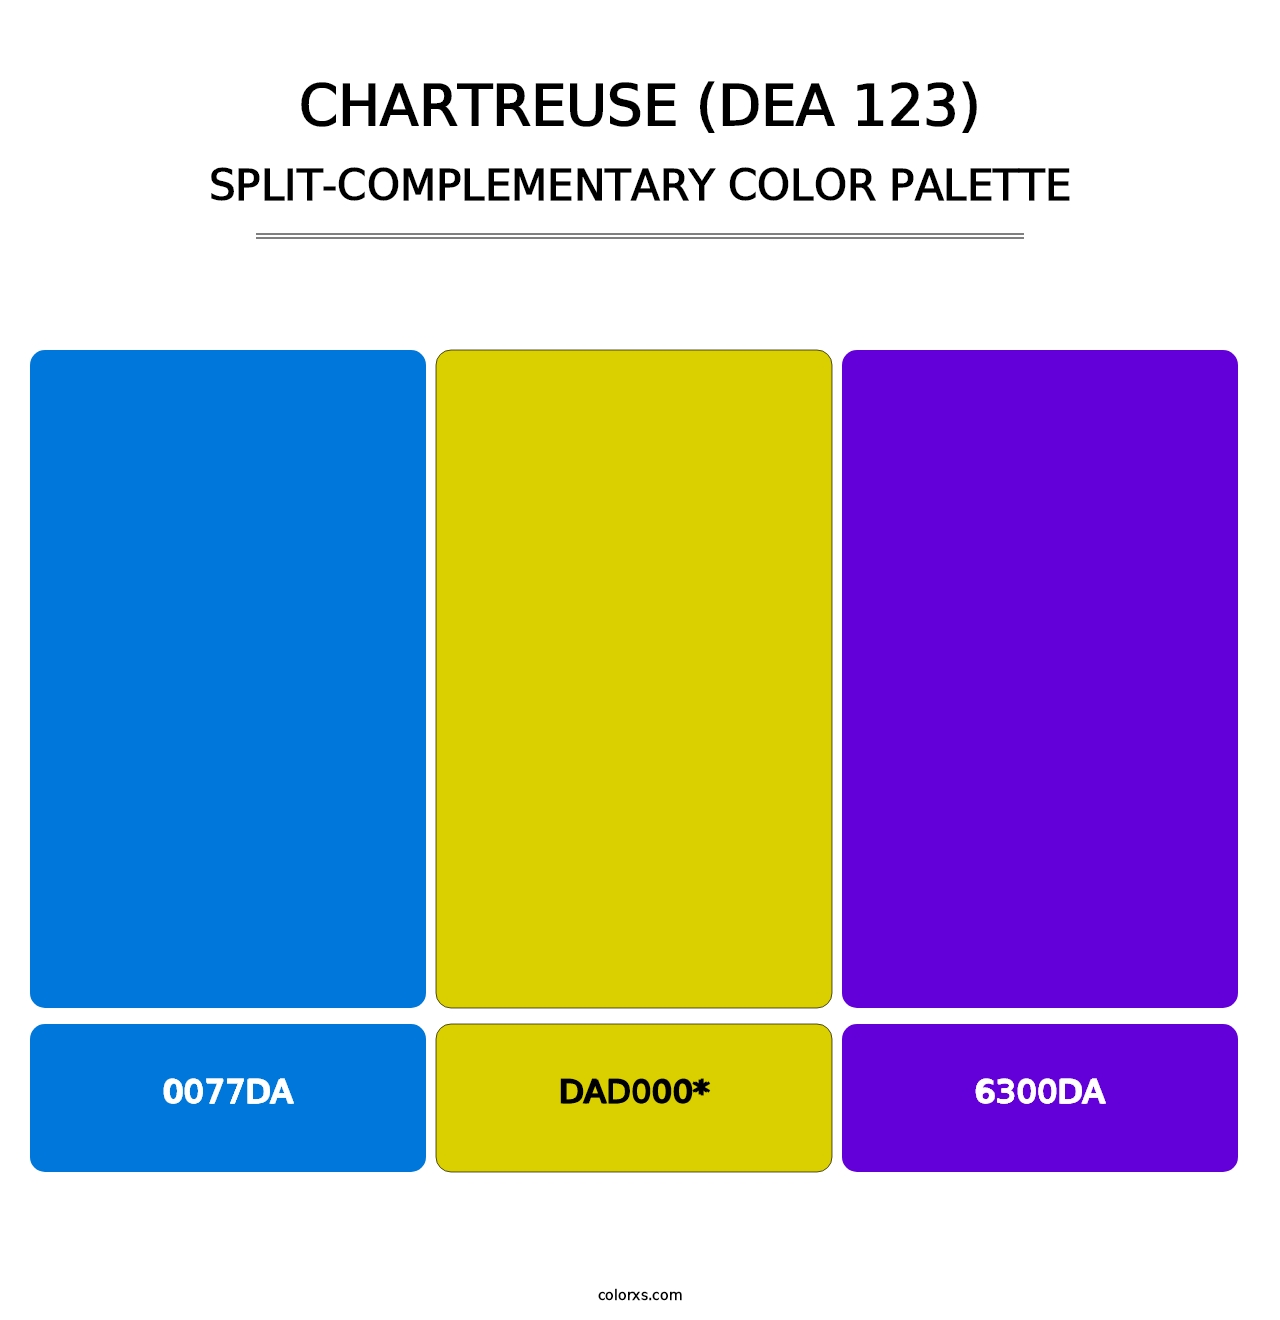 Chartreuse (DEA 123) - Split-Complementary Color Palette